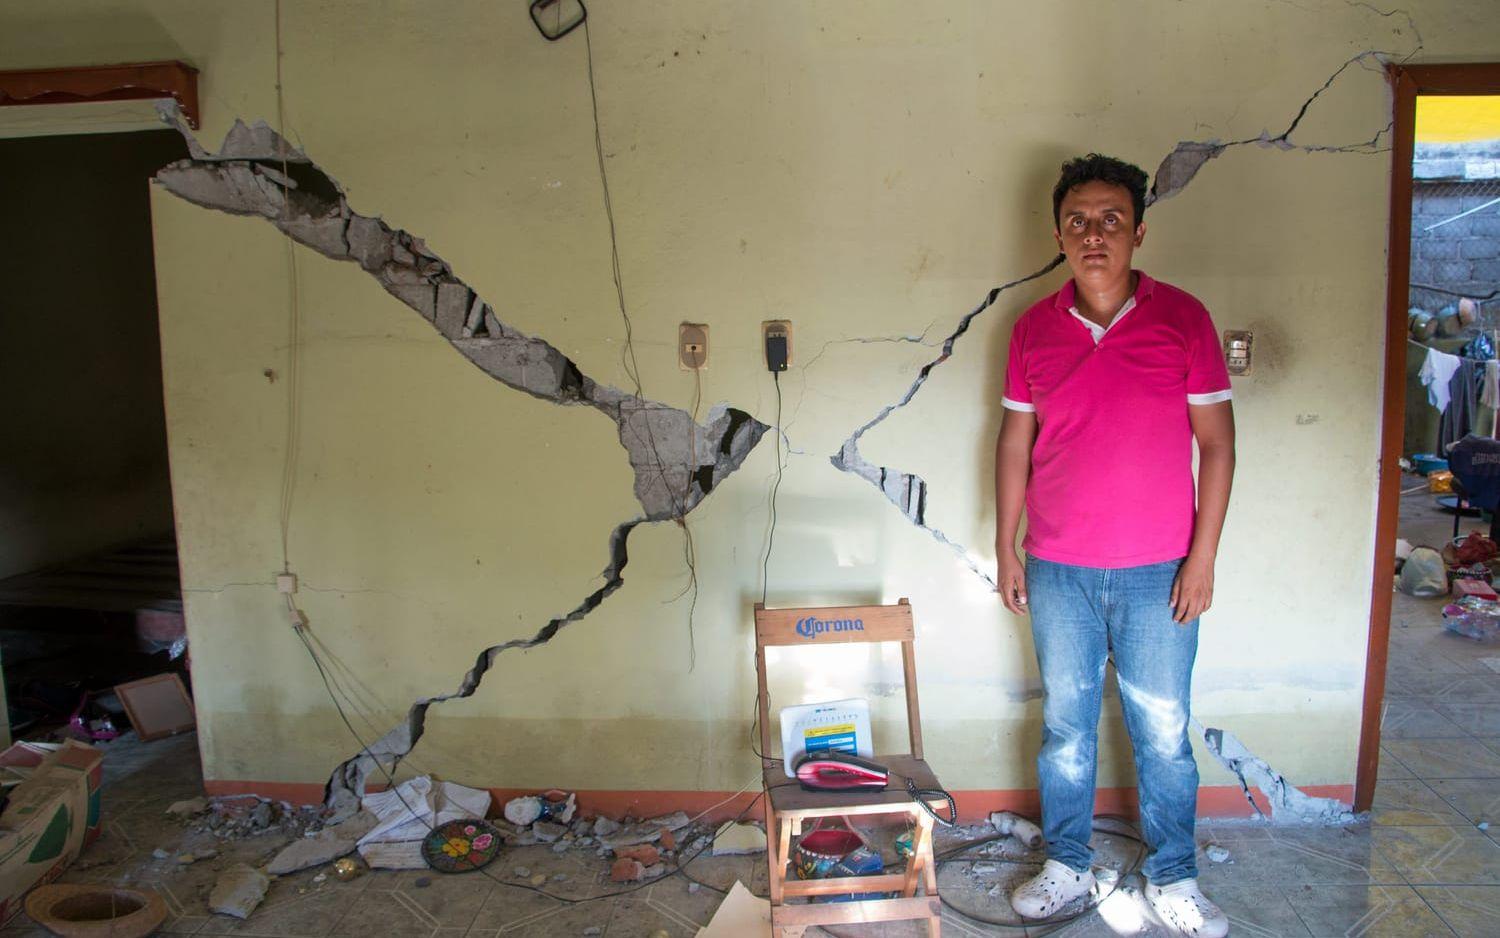 Damian Marín och hans familj blev kvar på övervåningen när jordbävningen slog till och lyckades inte ta sig ut förrän den var över. Sedan dess bor de på gatan utanför, rädda för att huset ska rasa. Foto: Åsa Welander